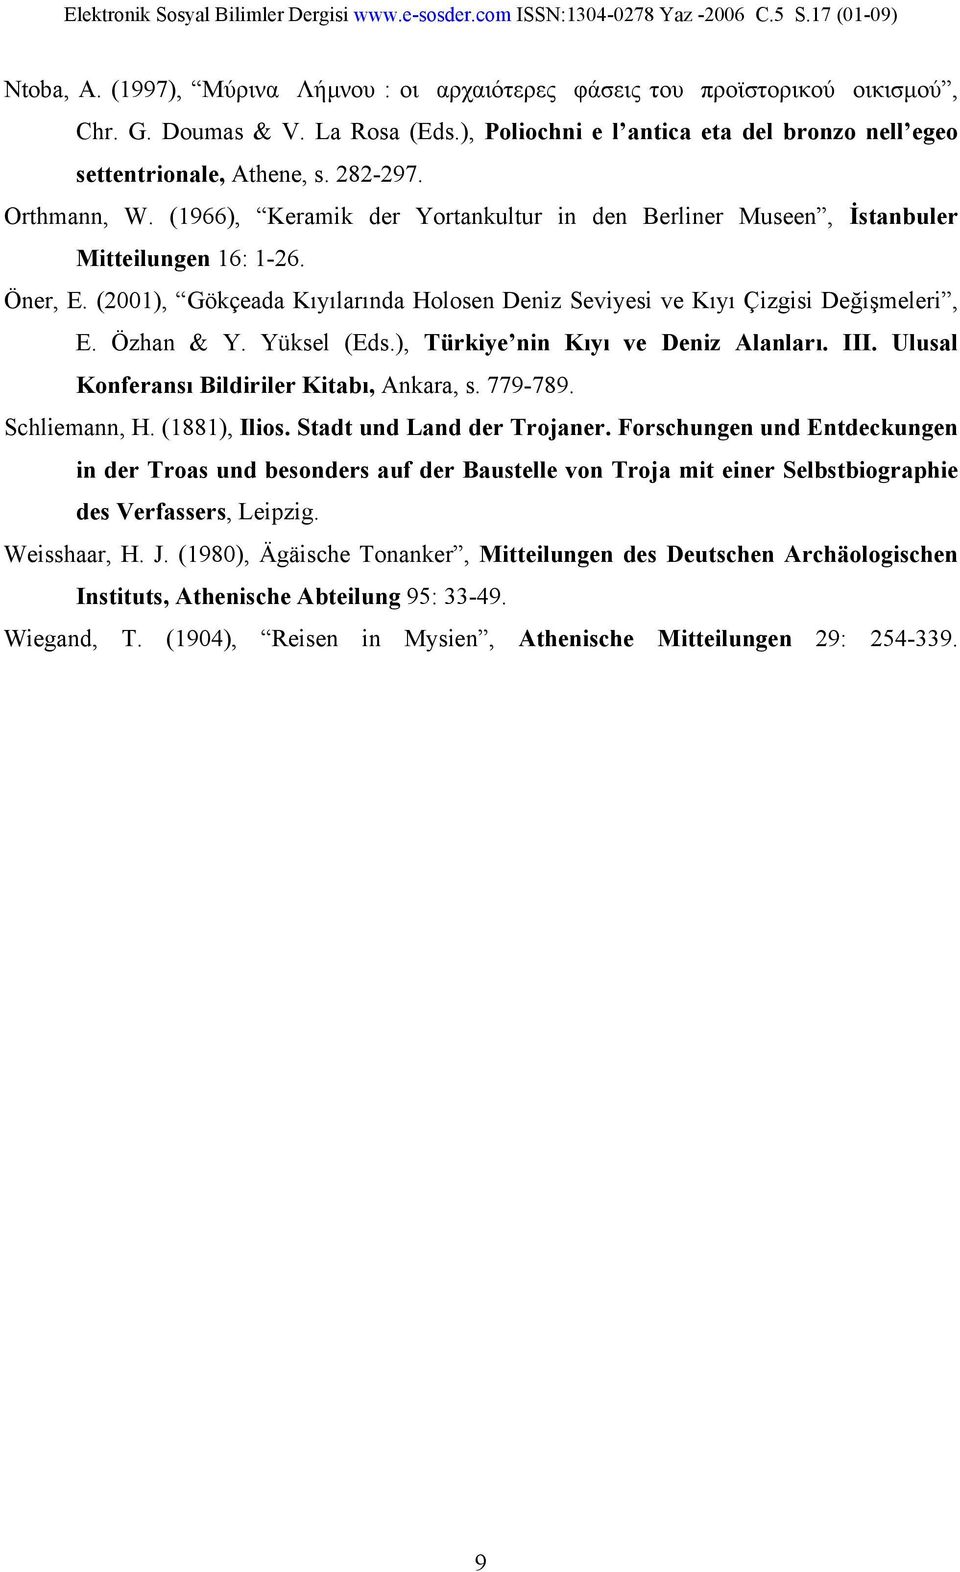 Özhan & Y. Yüksel (Eds.), Türkiye nin Kıyı ve Deniz Alanları. III. Ulusal Konferansı Bildiriler Kitabı, Ankara, s. 779-789. Schliemann, H. (1881), Ilios. Stadt und Land der Trojaner.